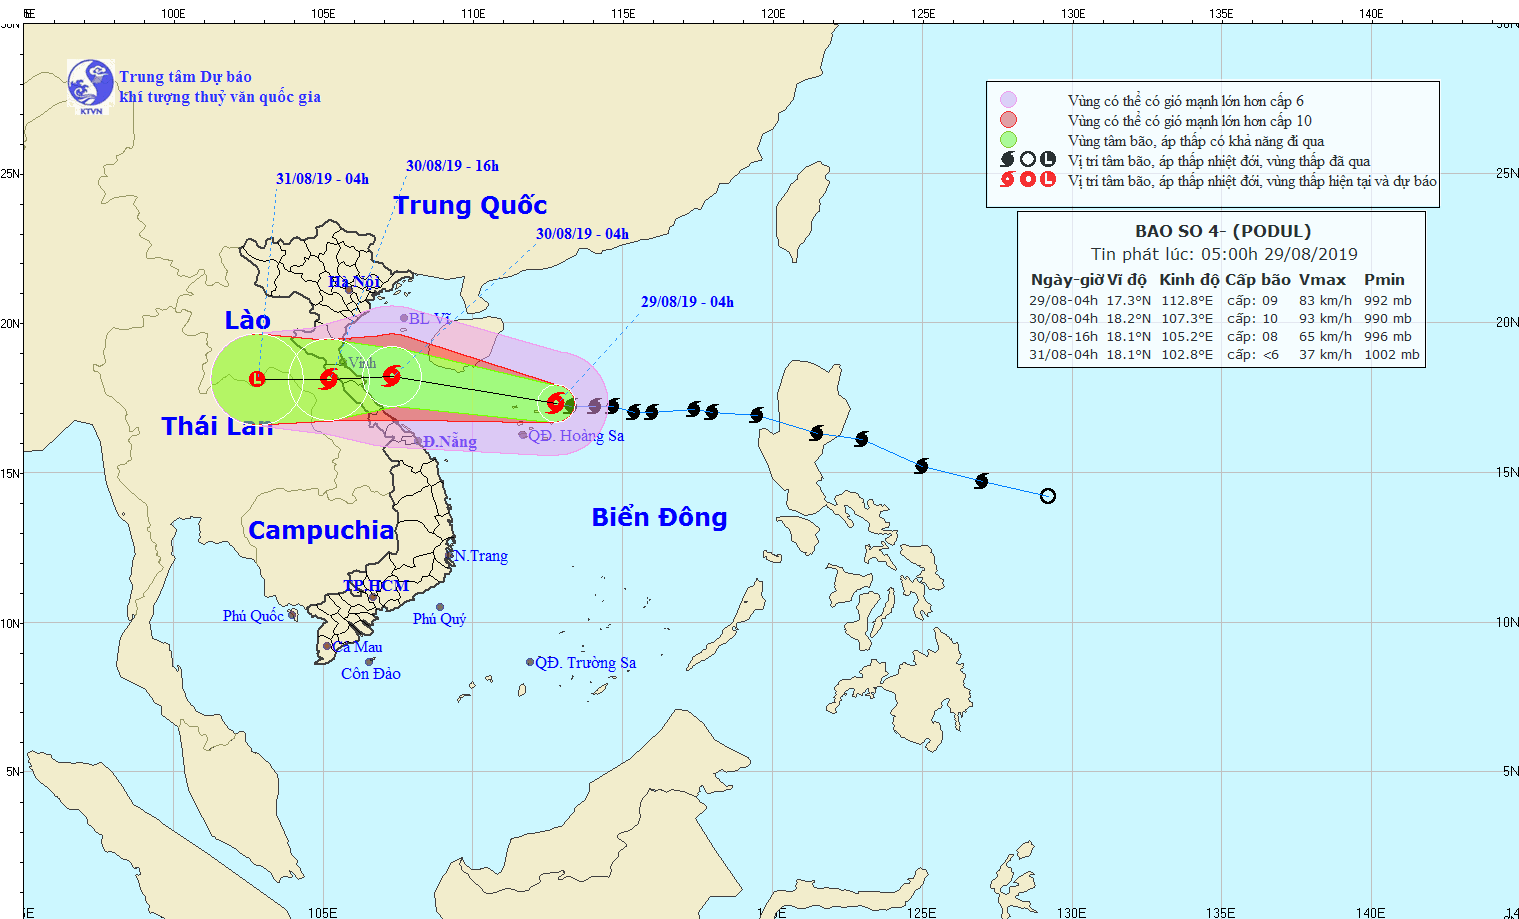 Từ đêm ngày 29: Bão số 4 gây mưa lớn ở miền Bắc và Trung Bộ